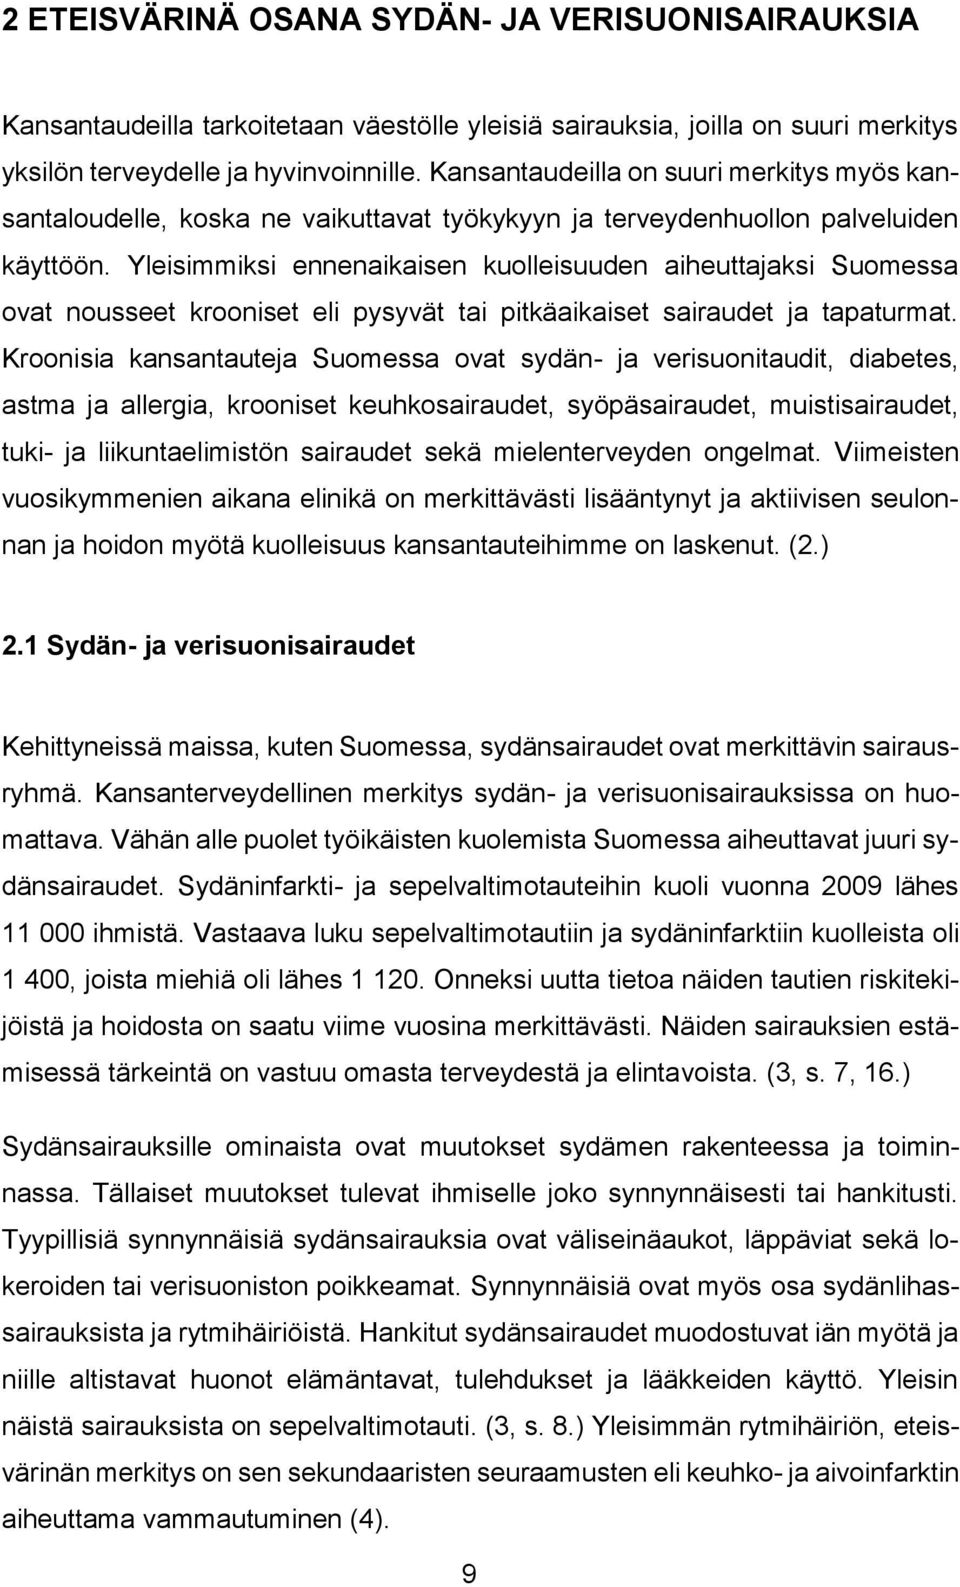 Yleisimmiksi ennenaikaisen kuolleisuuden aiheuttajaksi Suomessa ovat nousseet krooniset eli pysyvät tai pitkäaikaiset sairaudet ja tapaturmat.